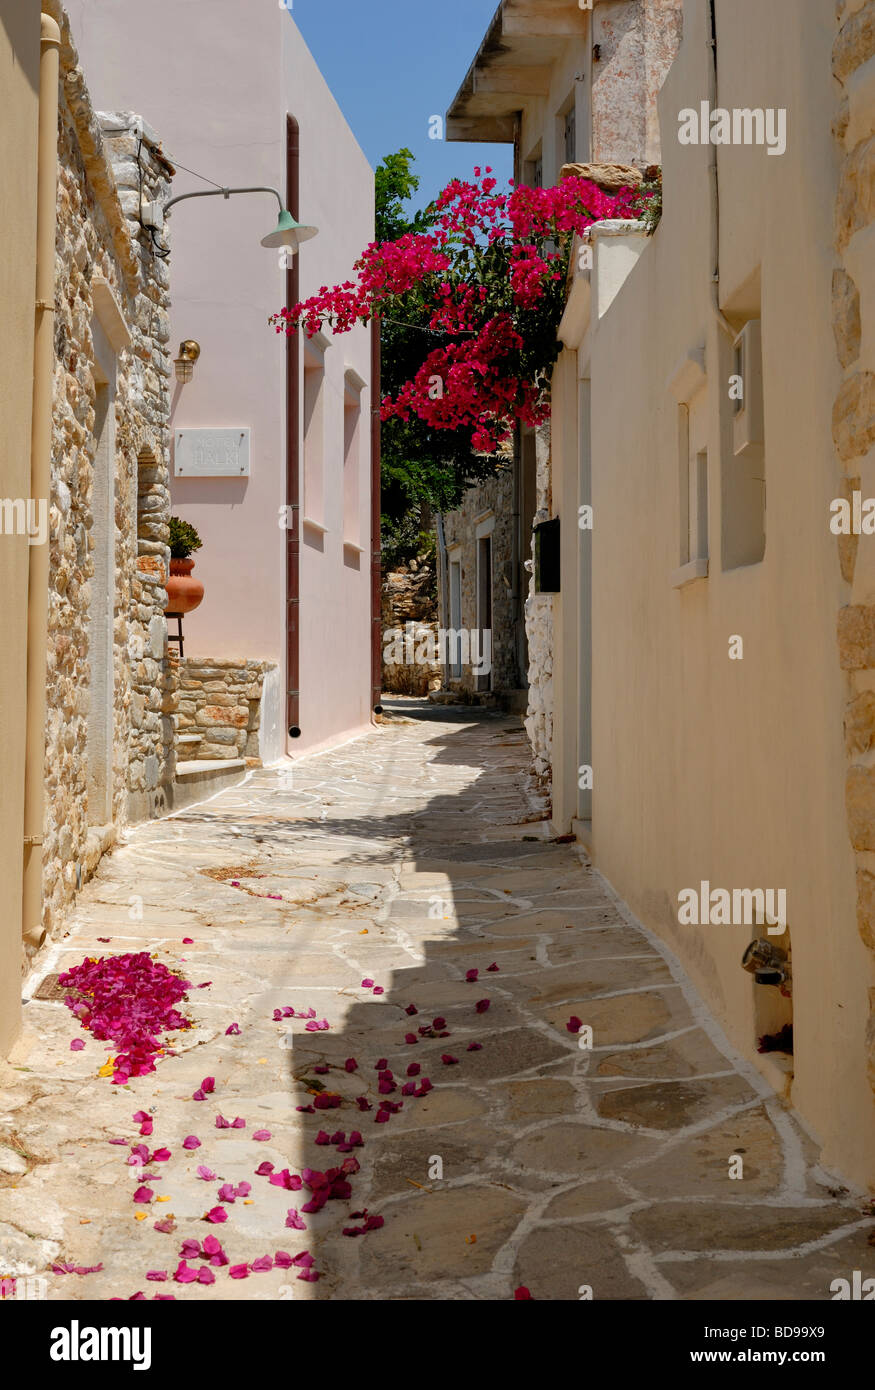 Une belle vue sur la ruelle étroite au coeur du petit village historique de Halki. Halki, Tragaea, l'île de Naxos, Cyclades, Gr Banque D'Images